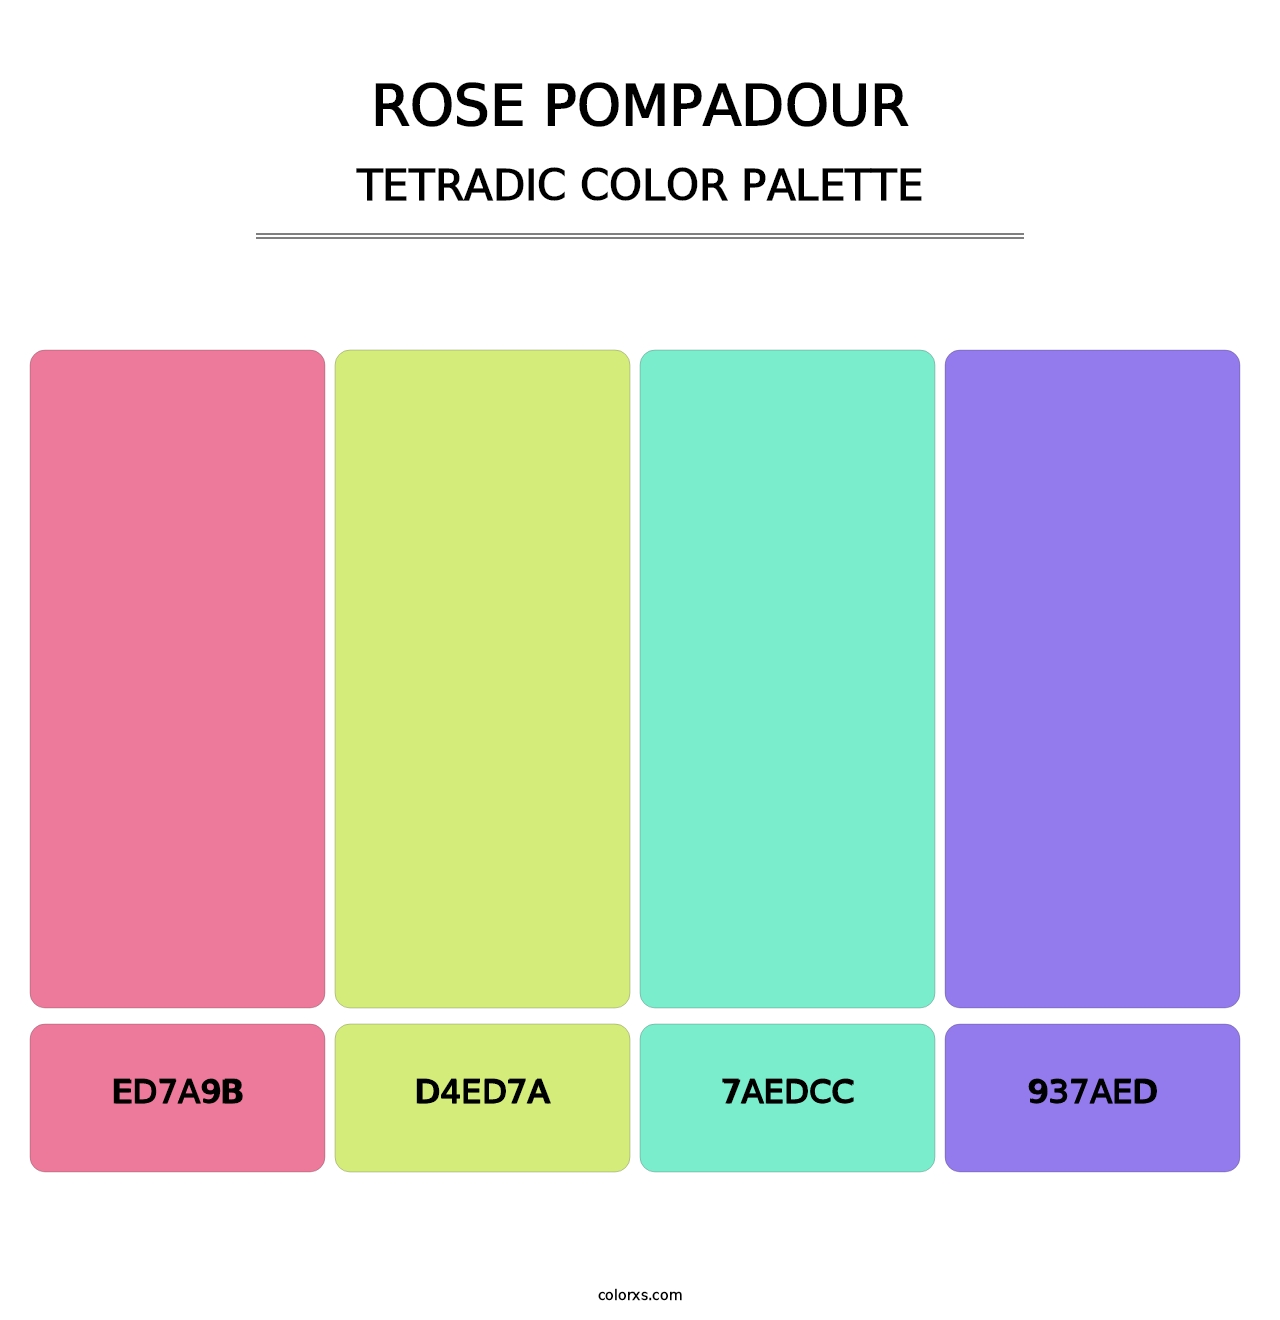 Rose Pompadour - Tetradic Color Palette